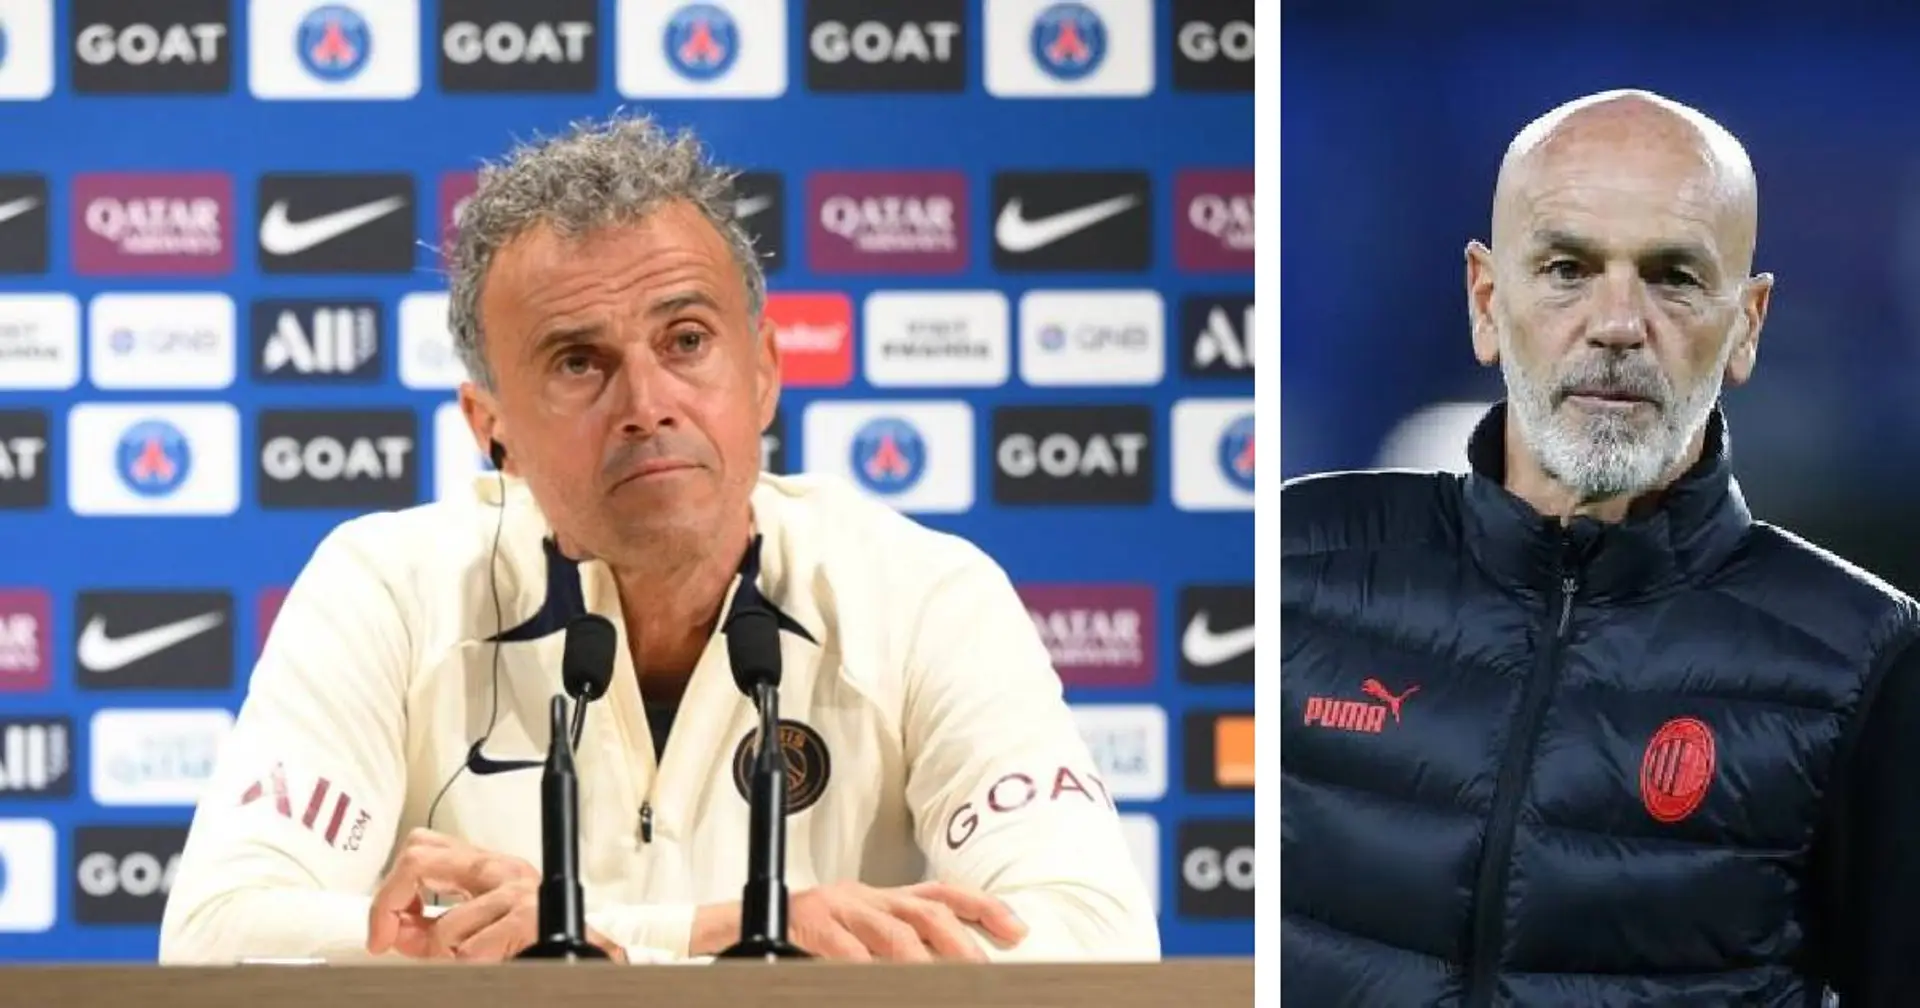 "Quand nous avons le ballon, nous sommes tous des attaquants" : Luis Enrique révèle si le PSG évoluera en 3-3-4 vs AC Milan